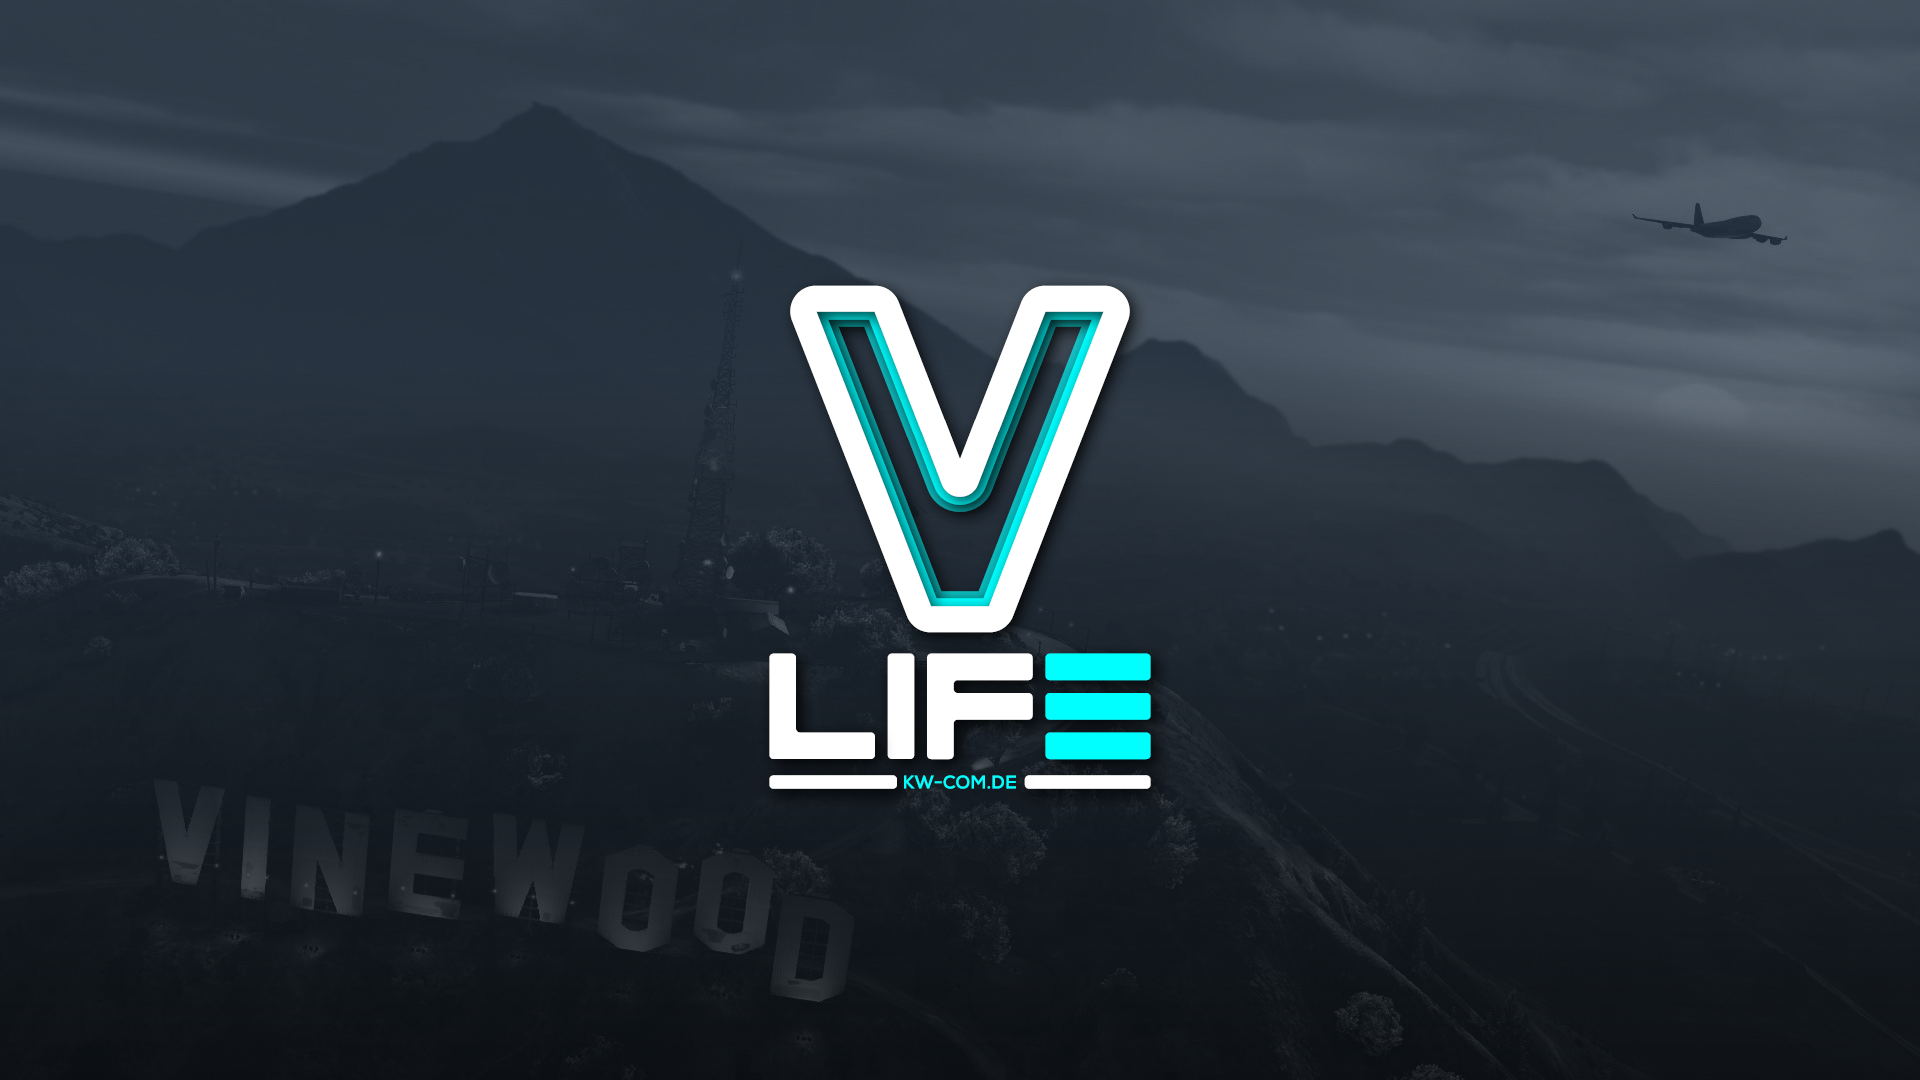 VL_Logo_v02.png